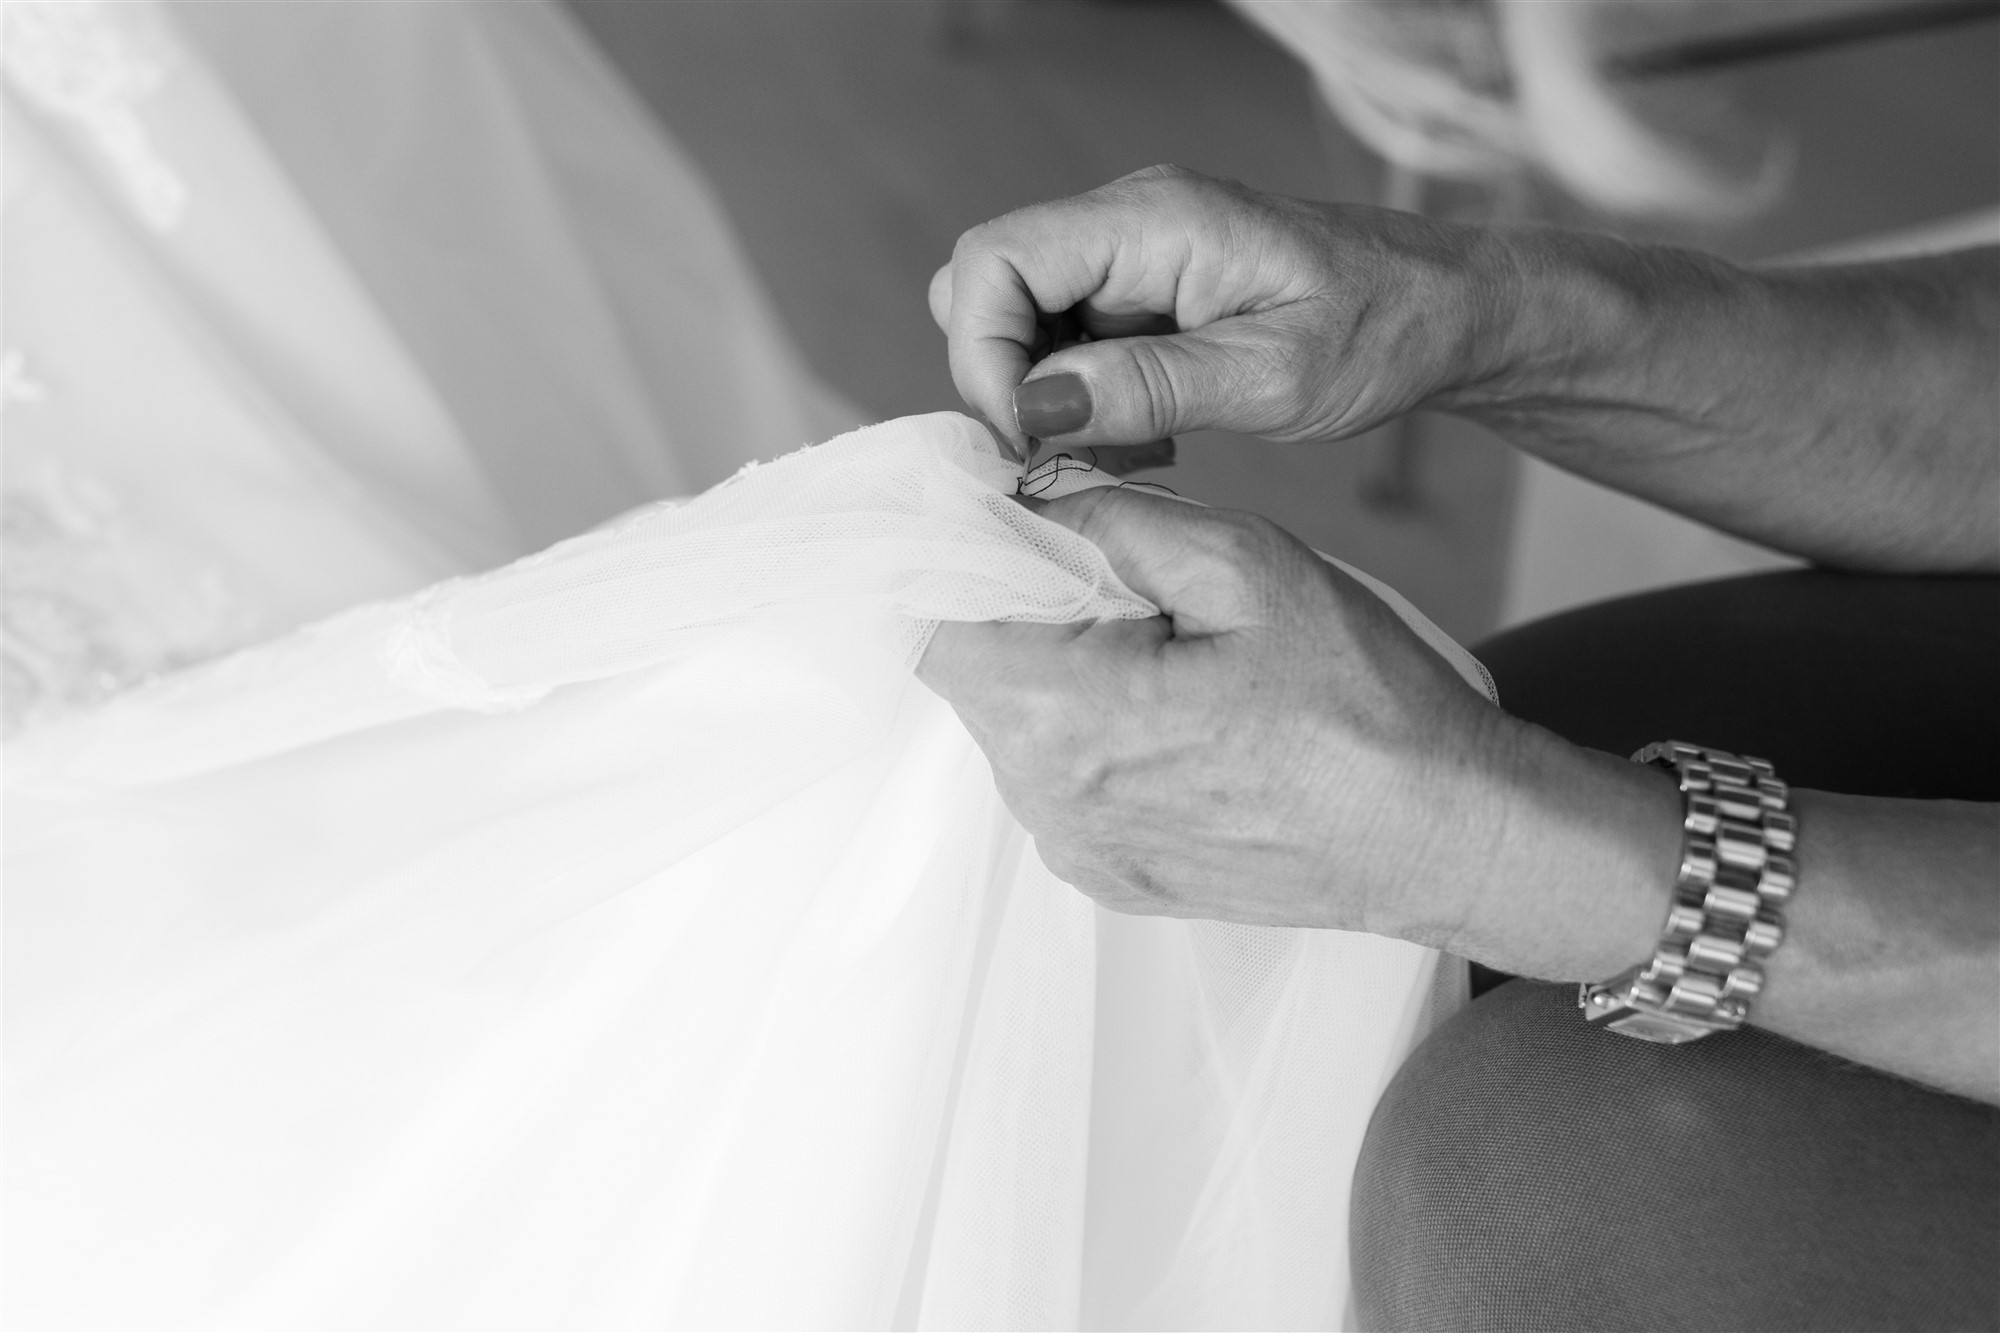 Detailfotografie beim Getting Ready der Braut